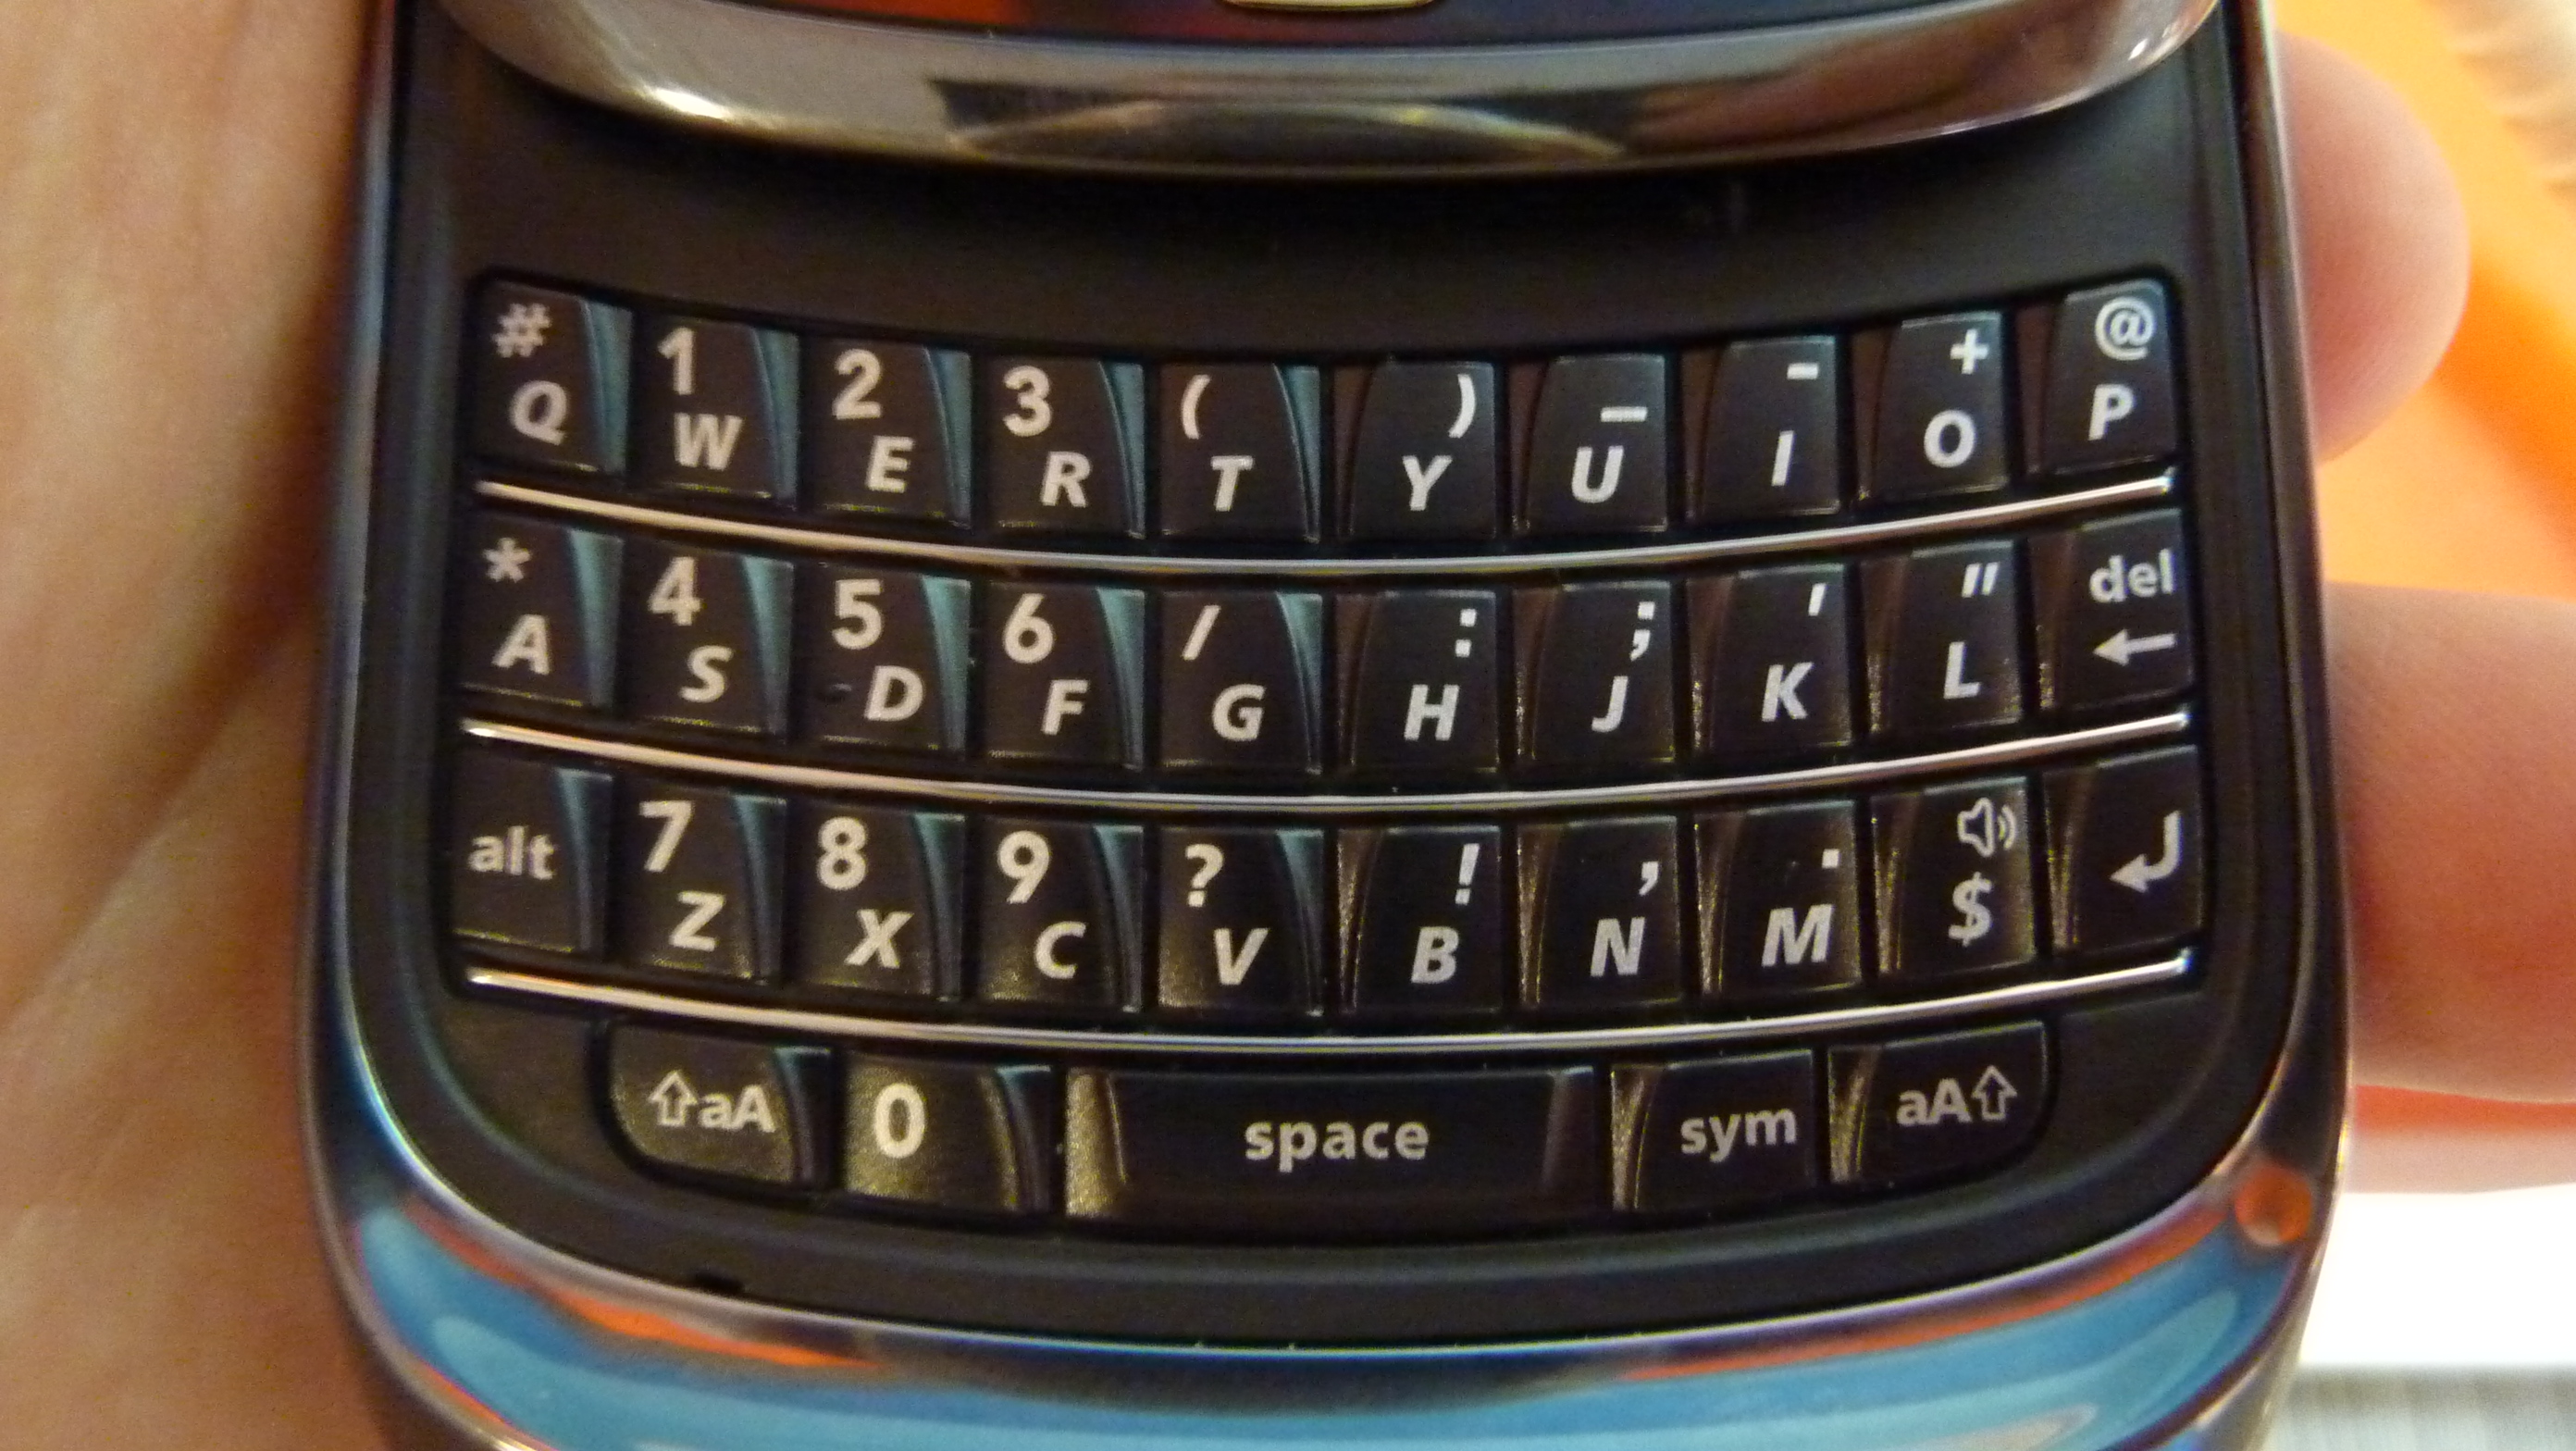 Blackberry+torch+keyboard